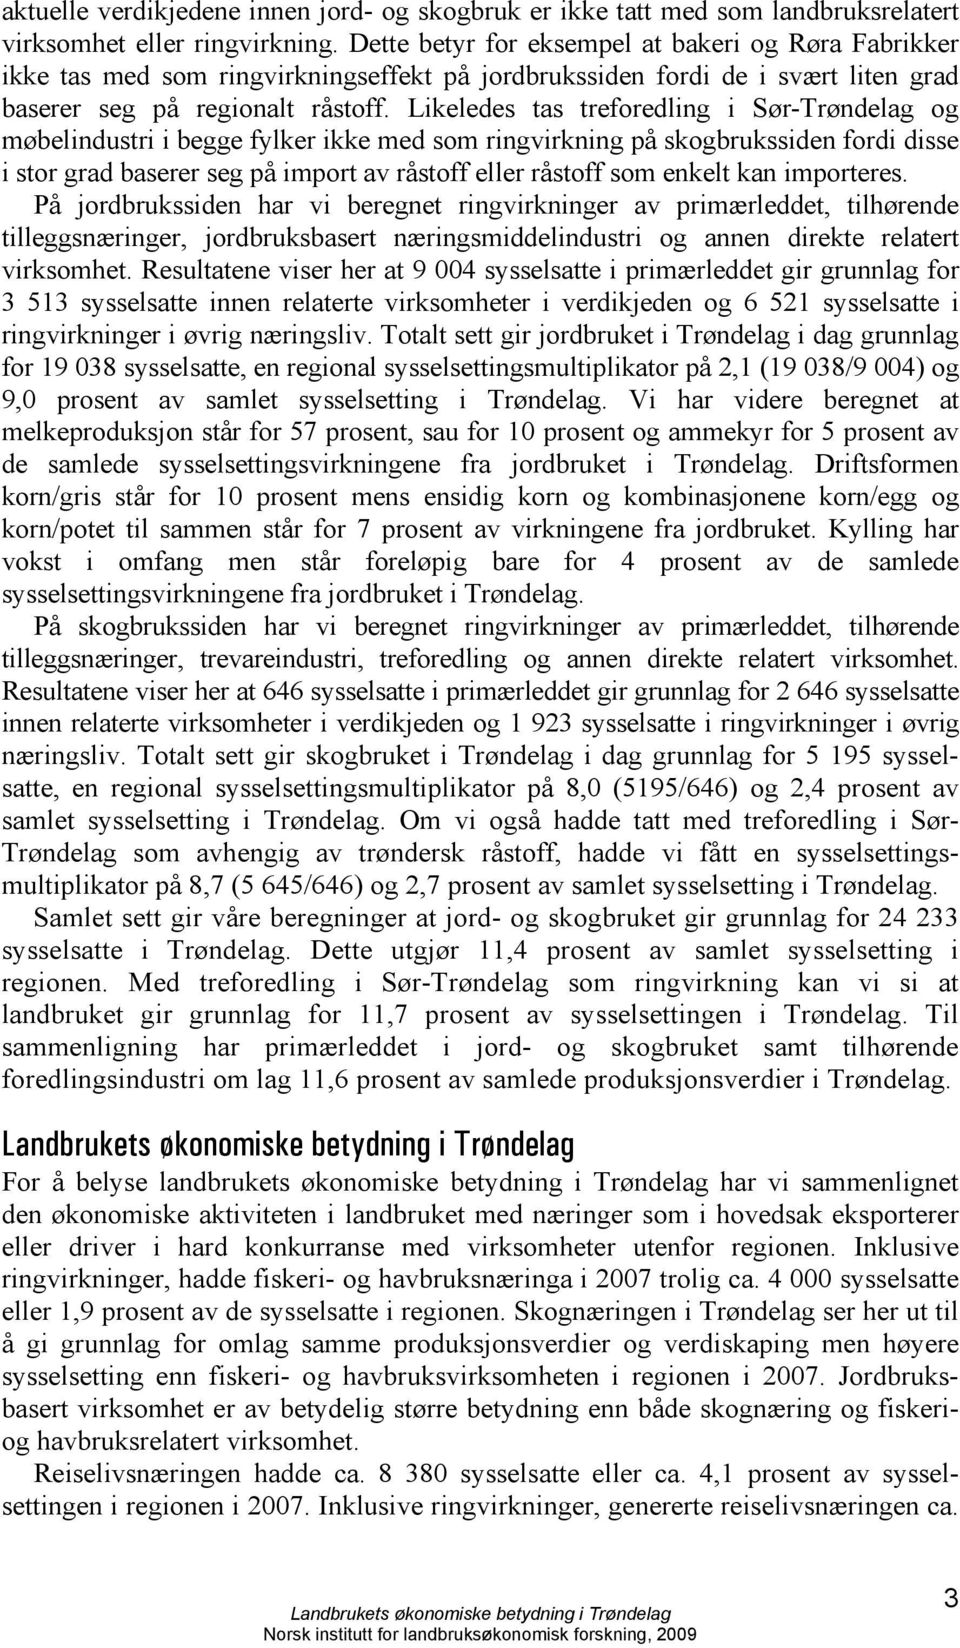 Likeledes tas treforedling i Sør-Trøndelag og møbelindustri i begge fylker ikke med som ringvirkning på skogbrukssiden fordi disse i stor grad baserer seg på import av råstoff eller råstoff som